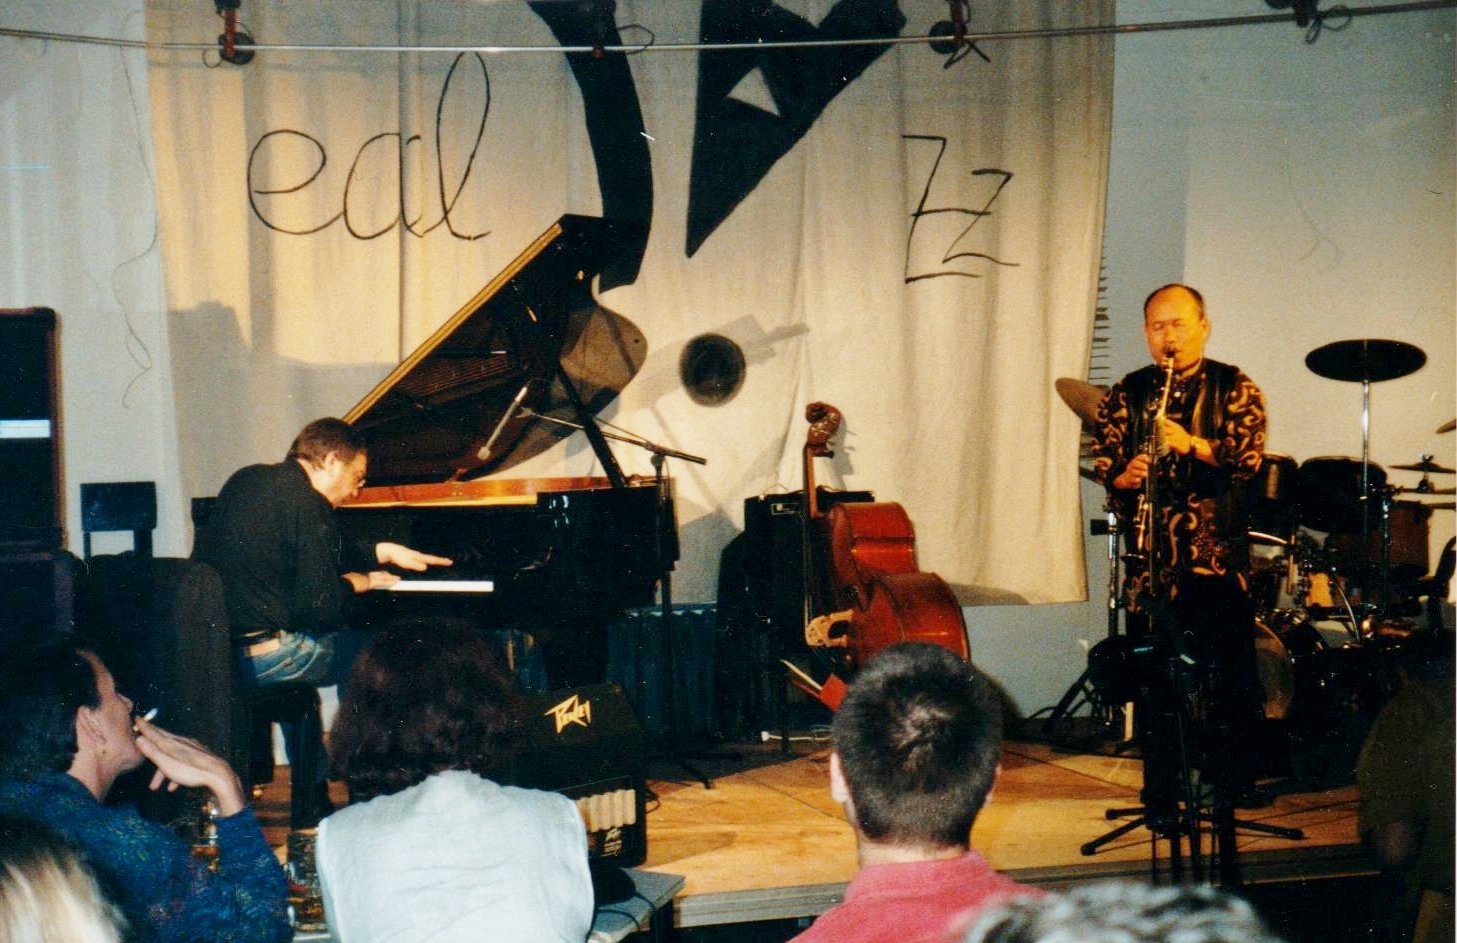 Mit Akira Sakata, 1997, Berlin, Edel Jazz, Foto: Quelle unbekannt